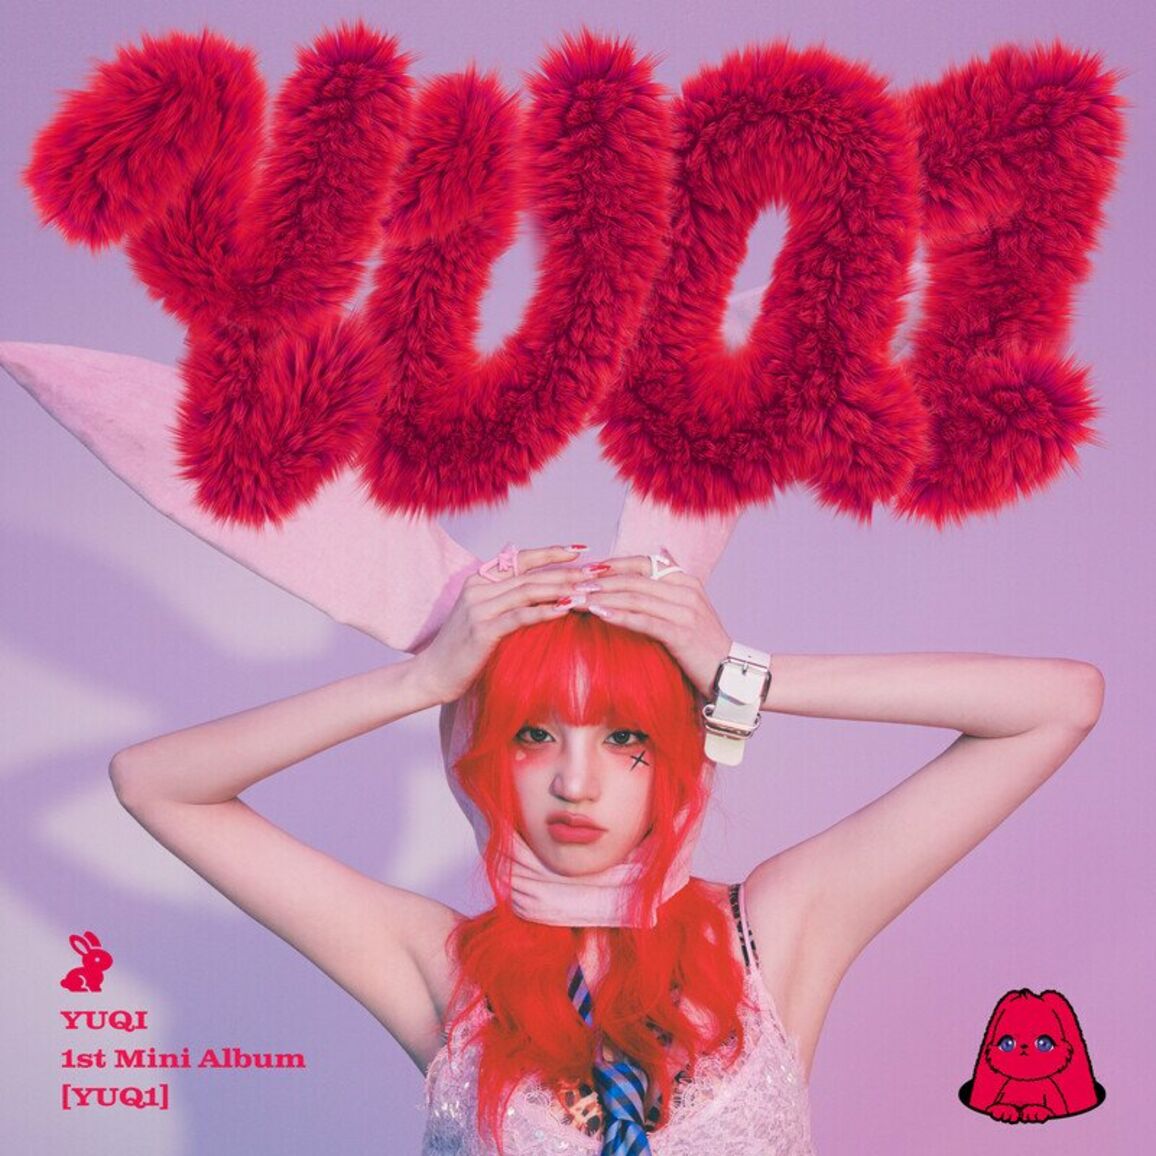 YUQI – YUQ1 – EP